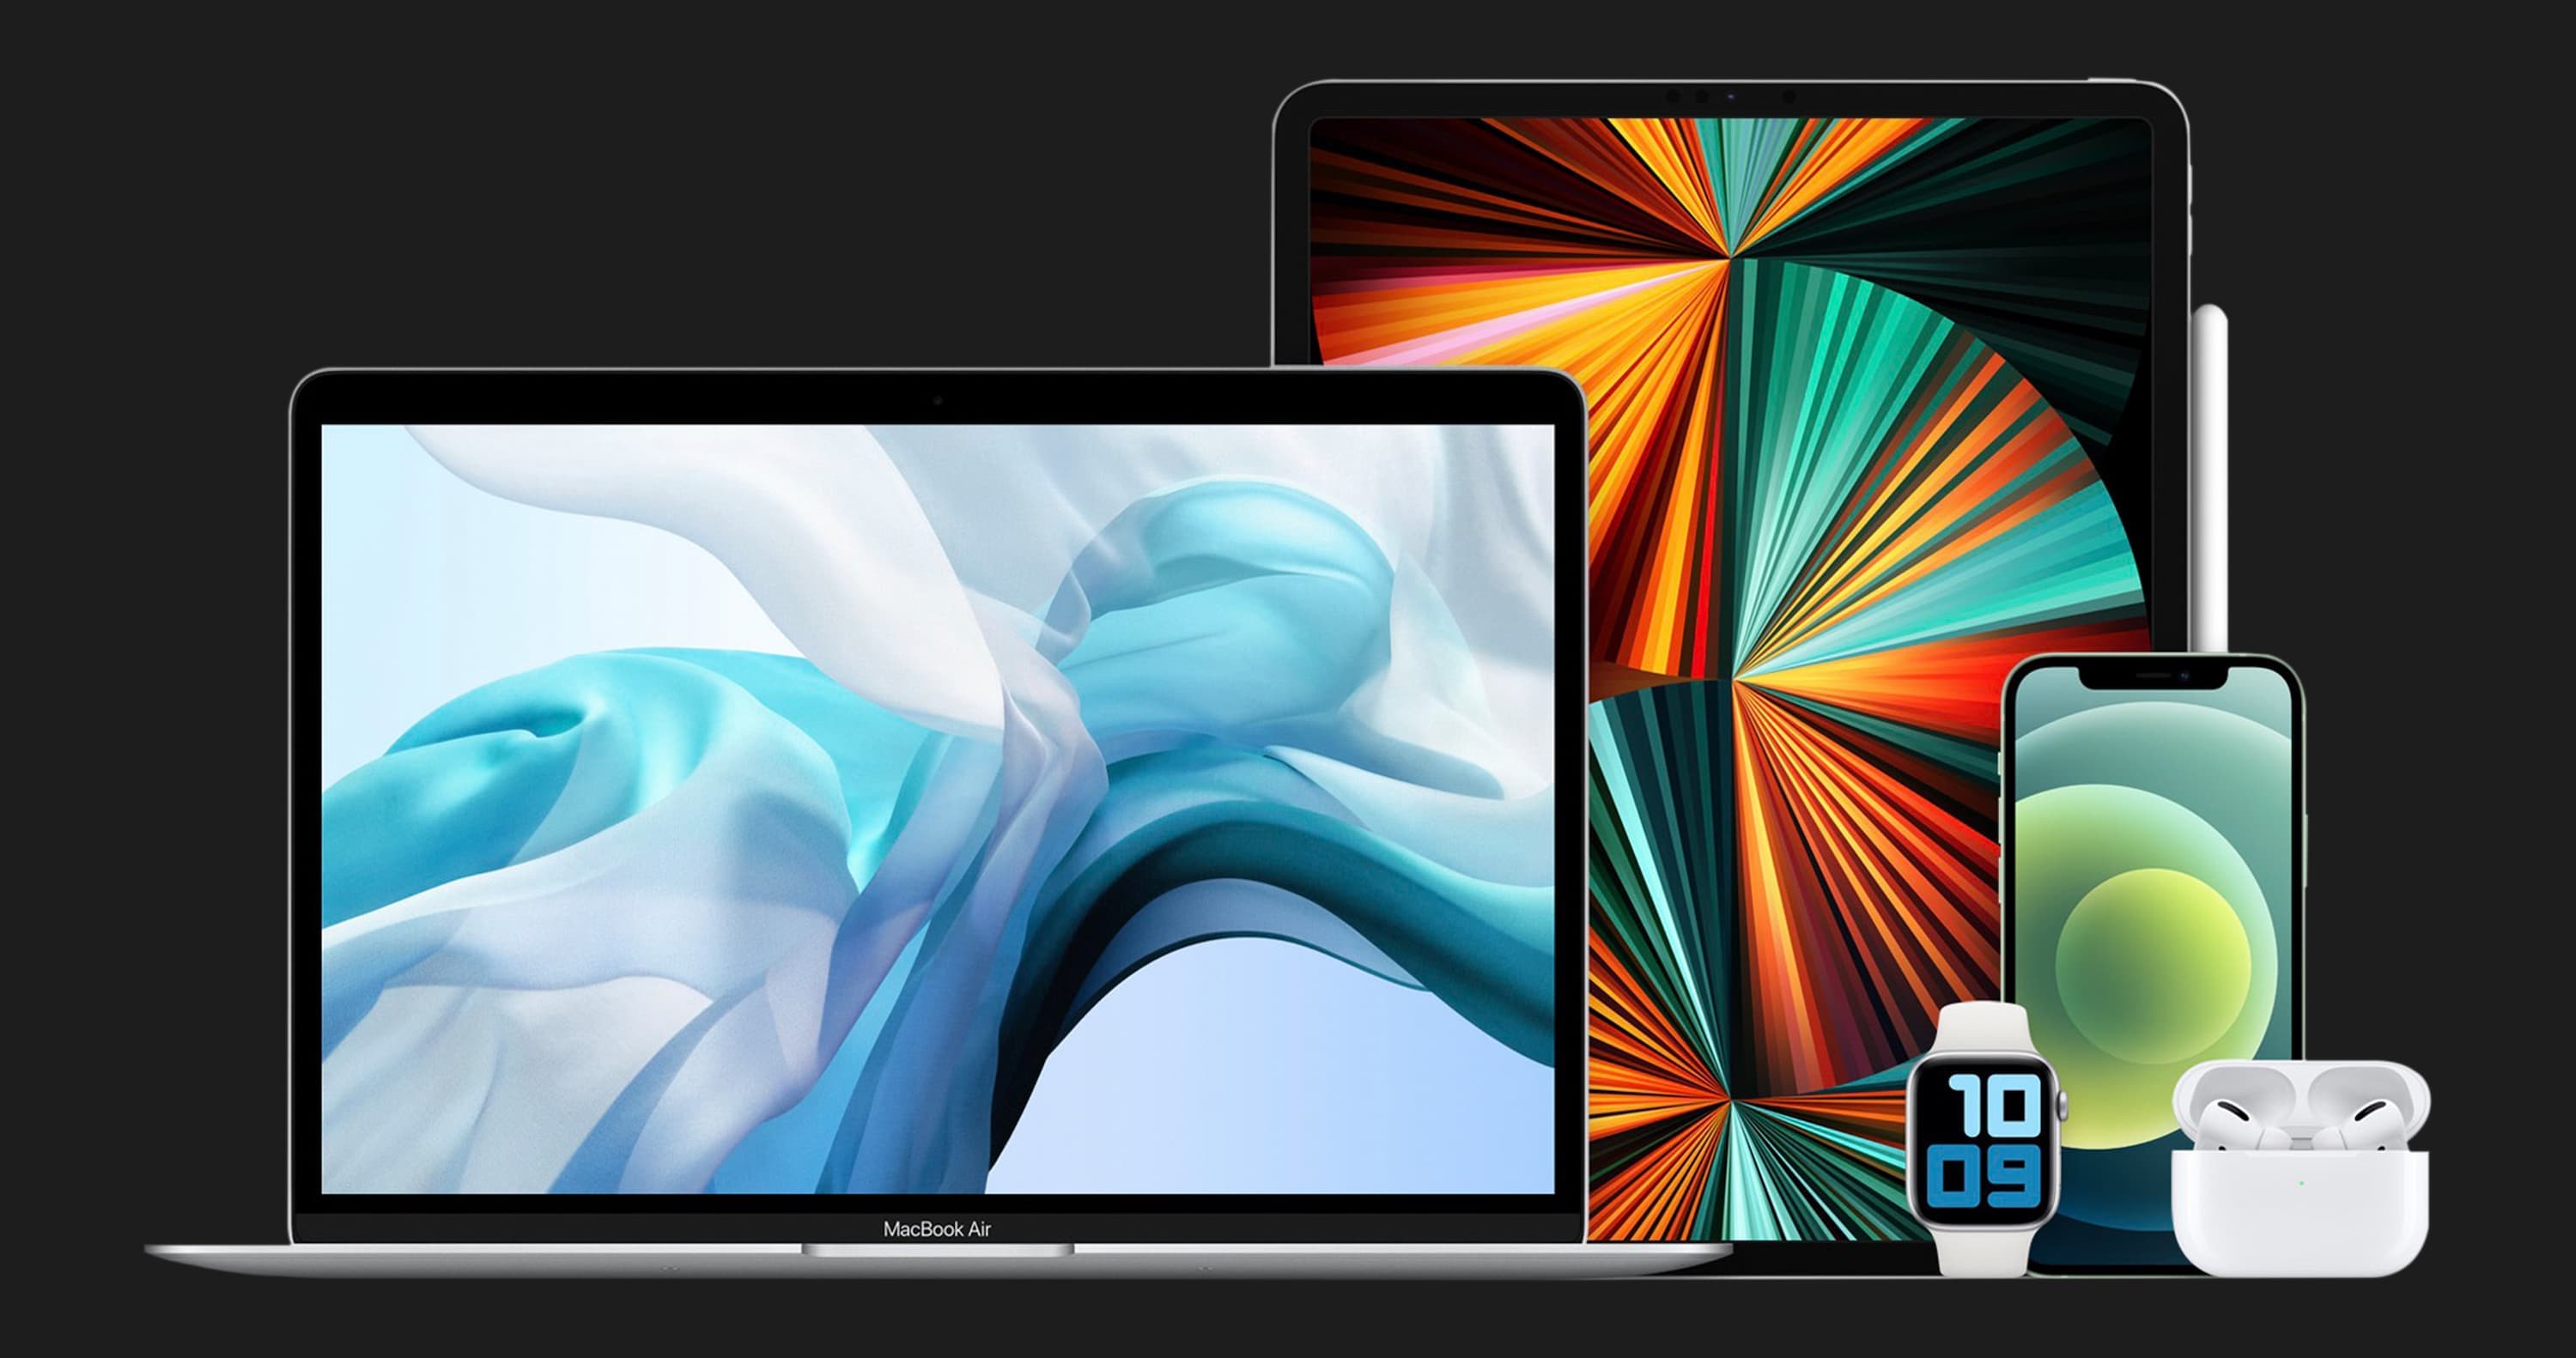 б/у Apple MacBook Air 13, 2020 (256GB) (MGN93) M1 (Идеальное состояние)